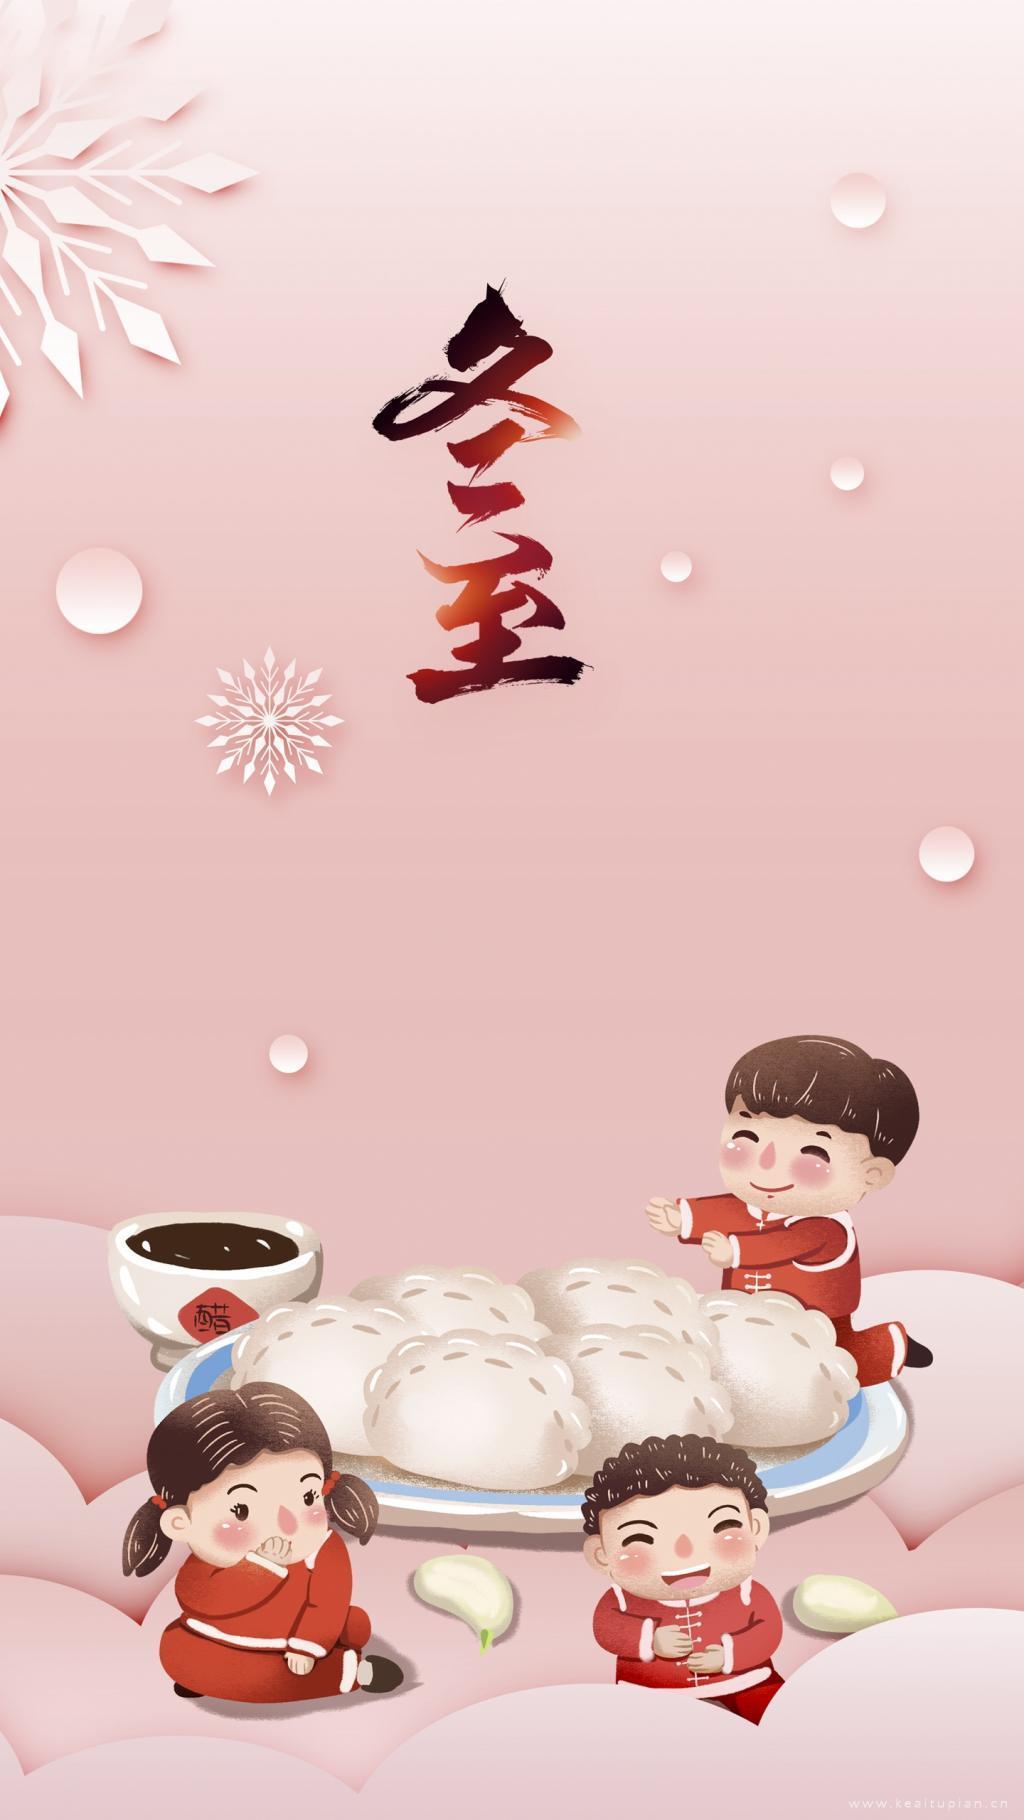 冬至阖家团圆吃饺子高清卡通手机壁纸图片